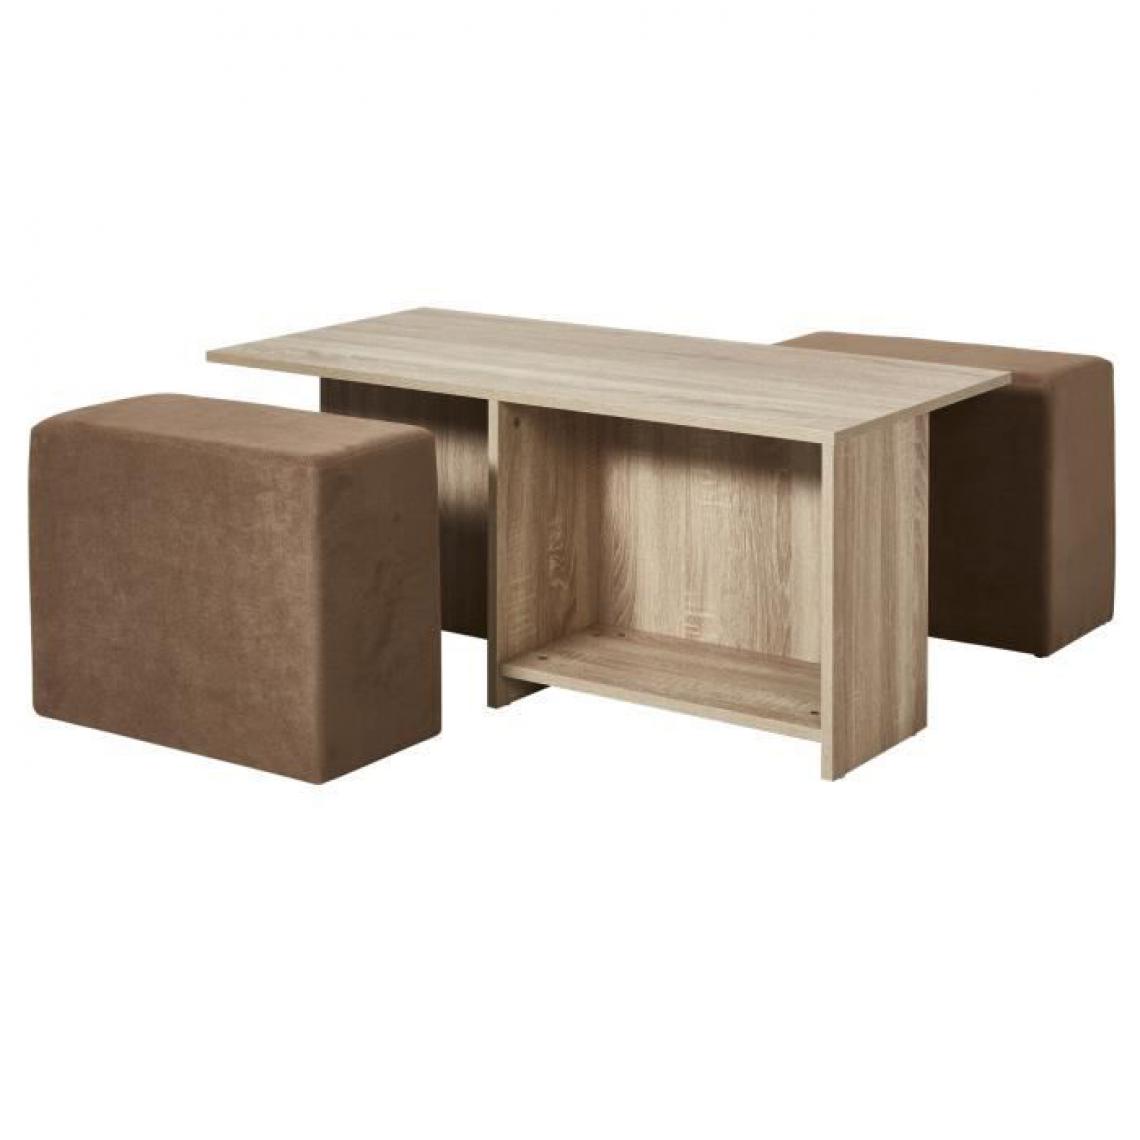 Cstore - Ensemble table basse - MDF - Décor naturel + 2 poufs tissu Taupe - L 100 x P 60 x H 41,8 cm - Tables basses